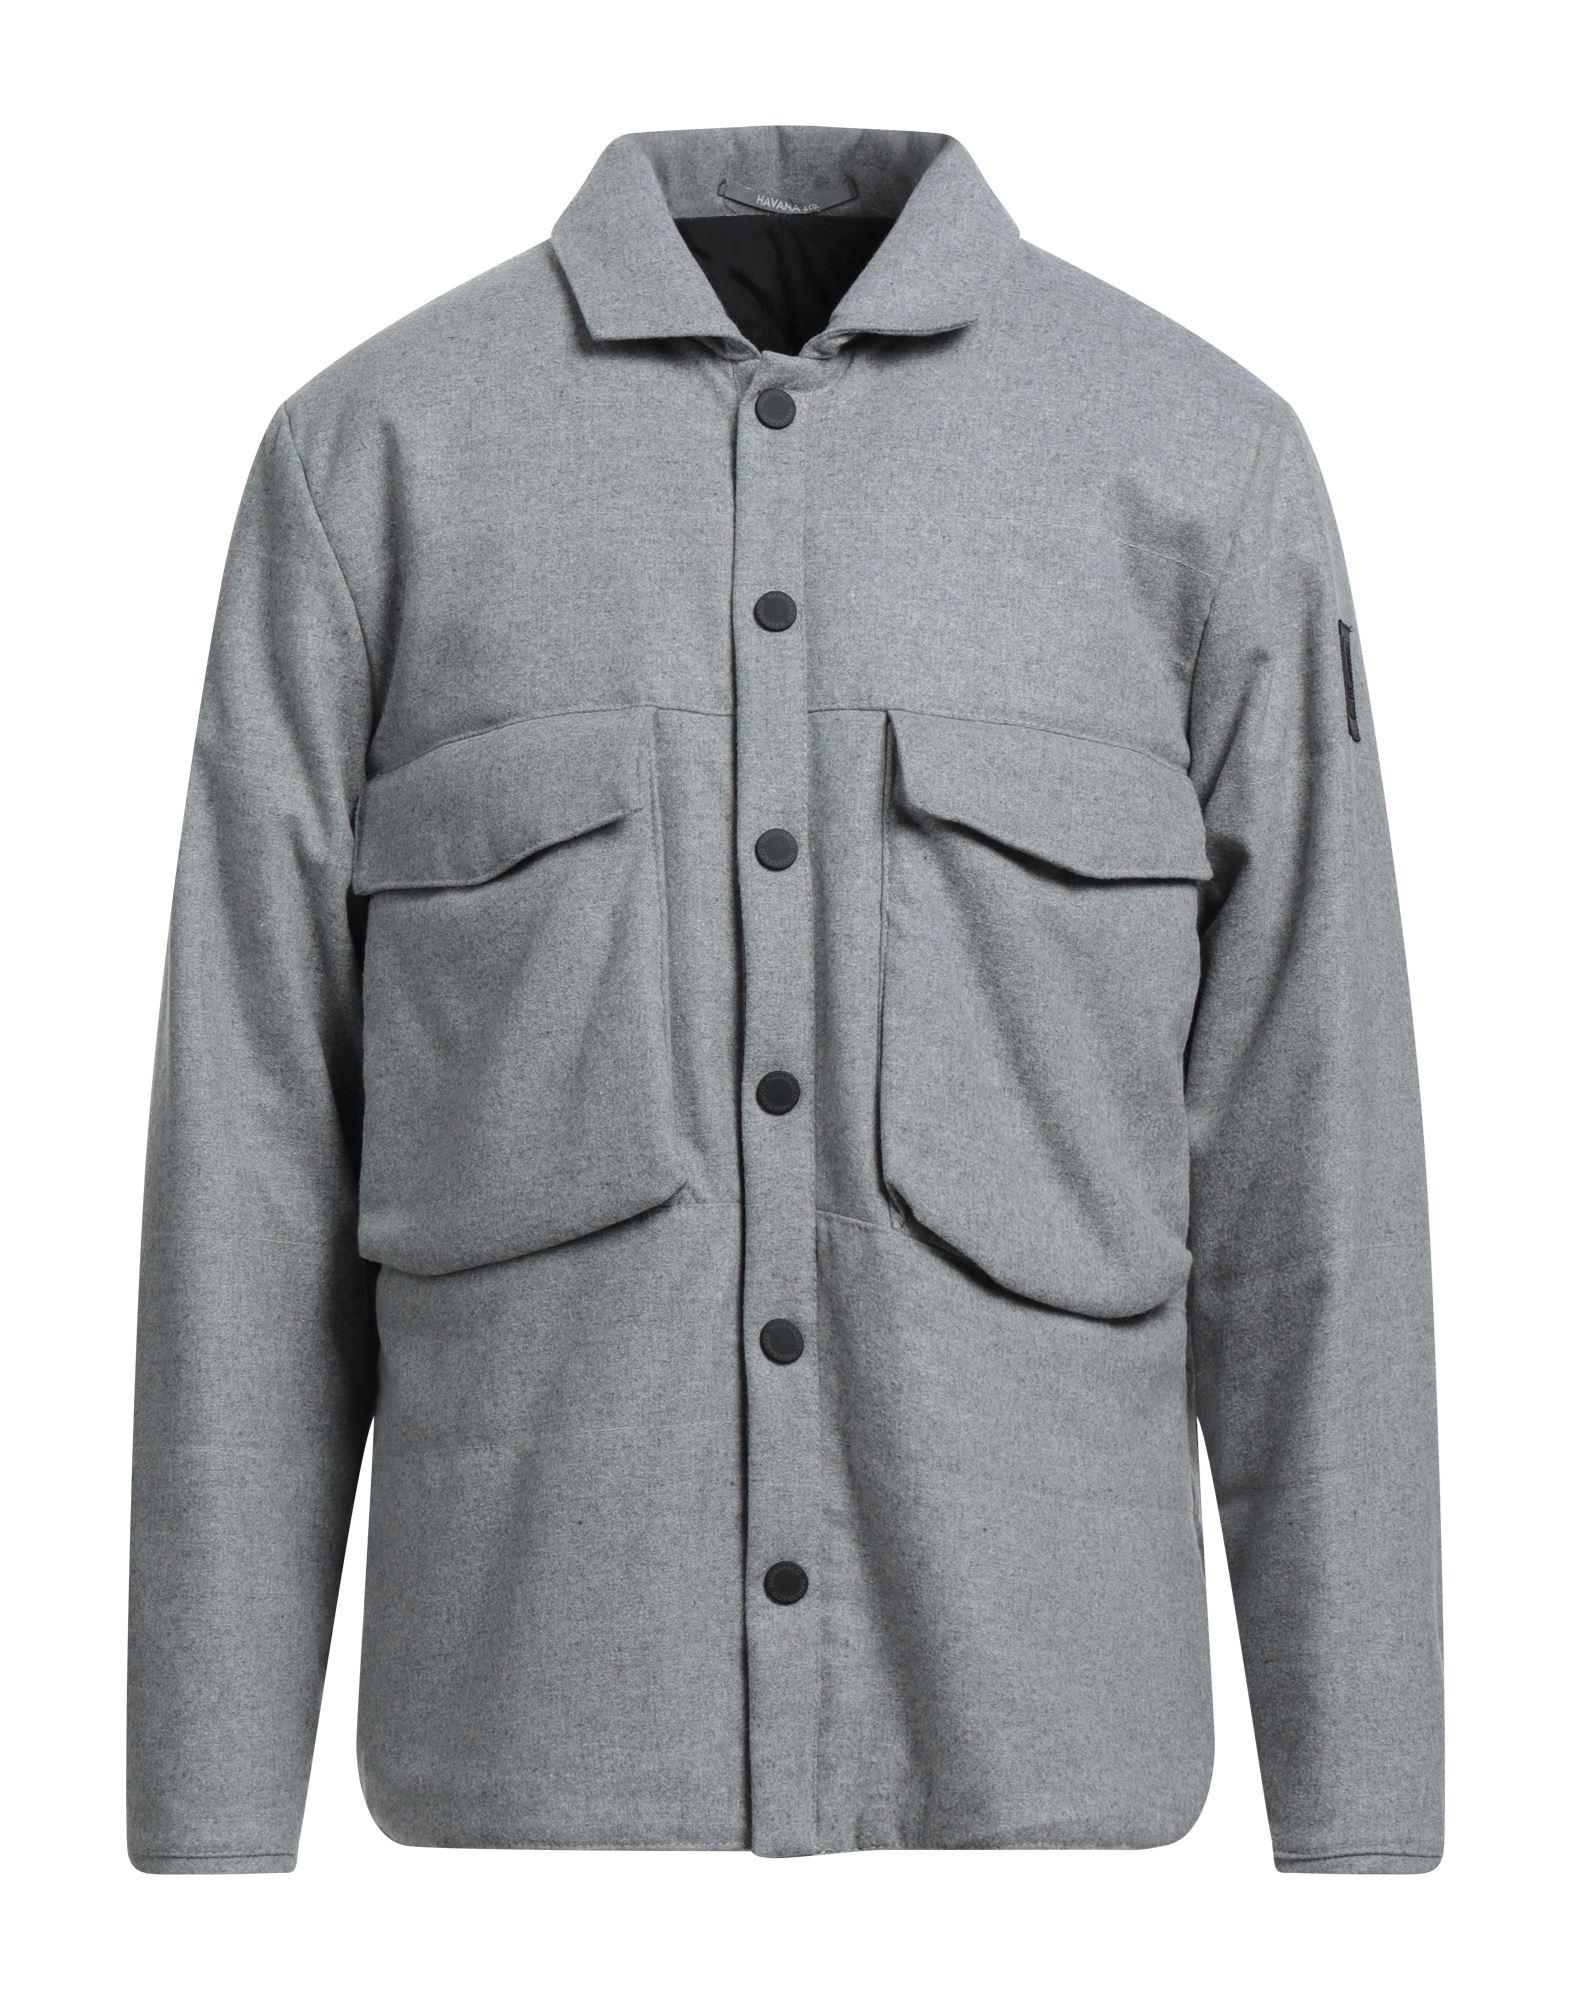 Havana & Co. Jackets In Grey